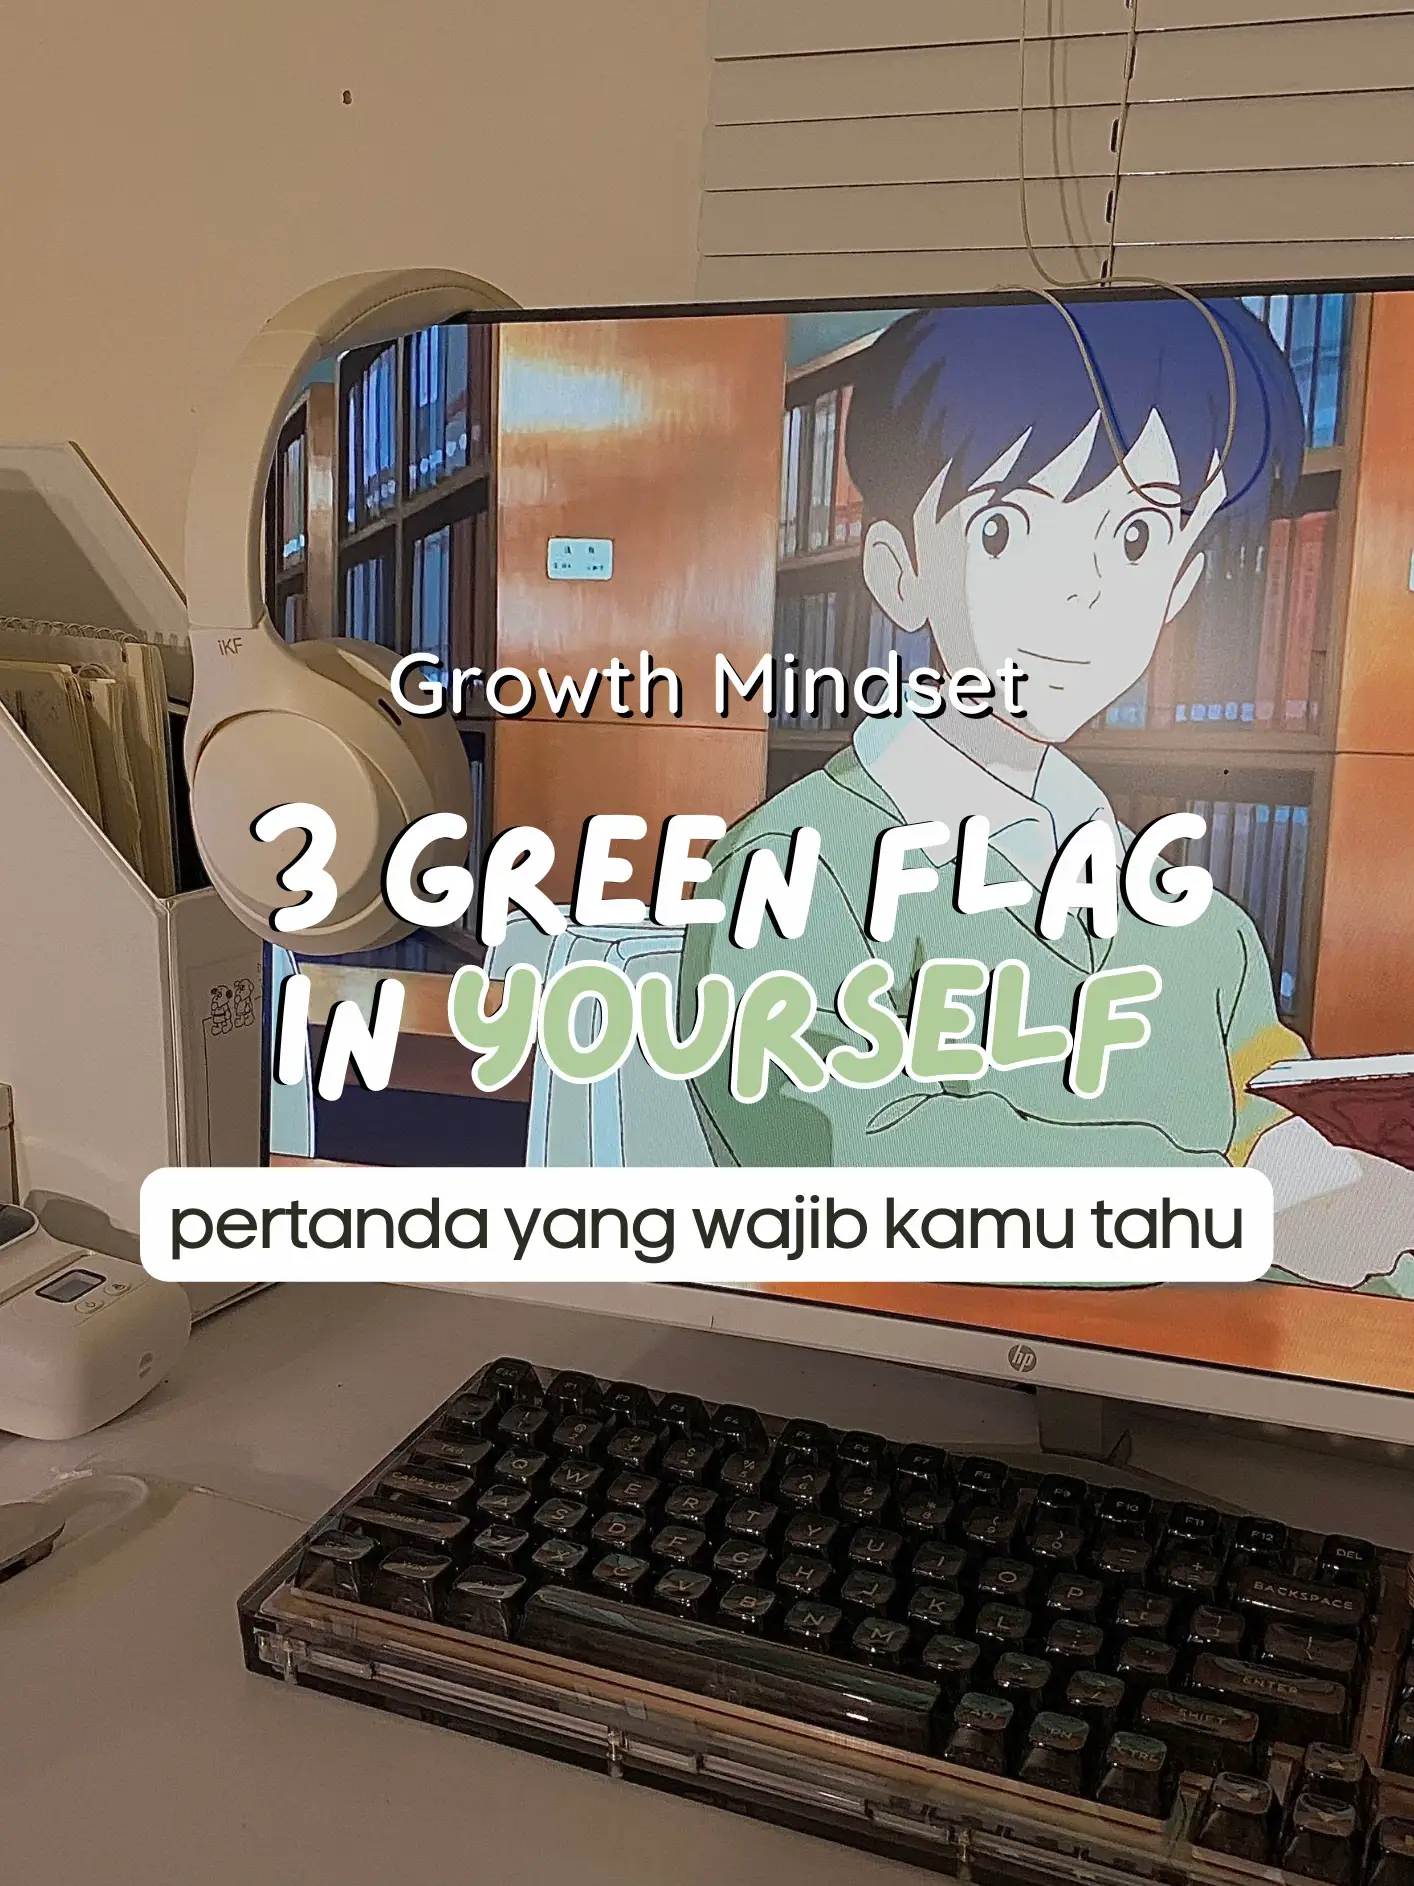 3 Green flag di diri kamu, Gallery posted by kamilah